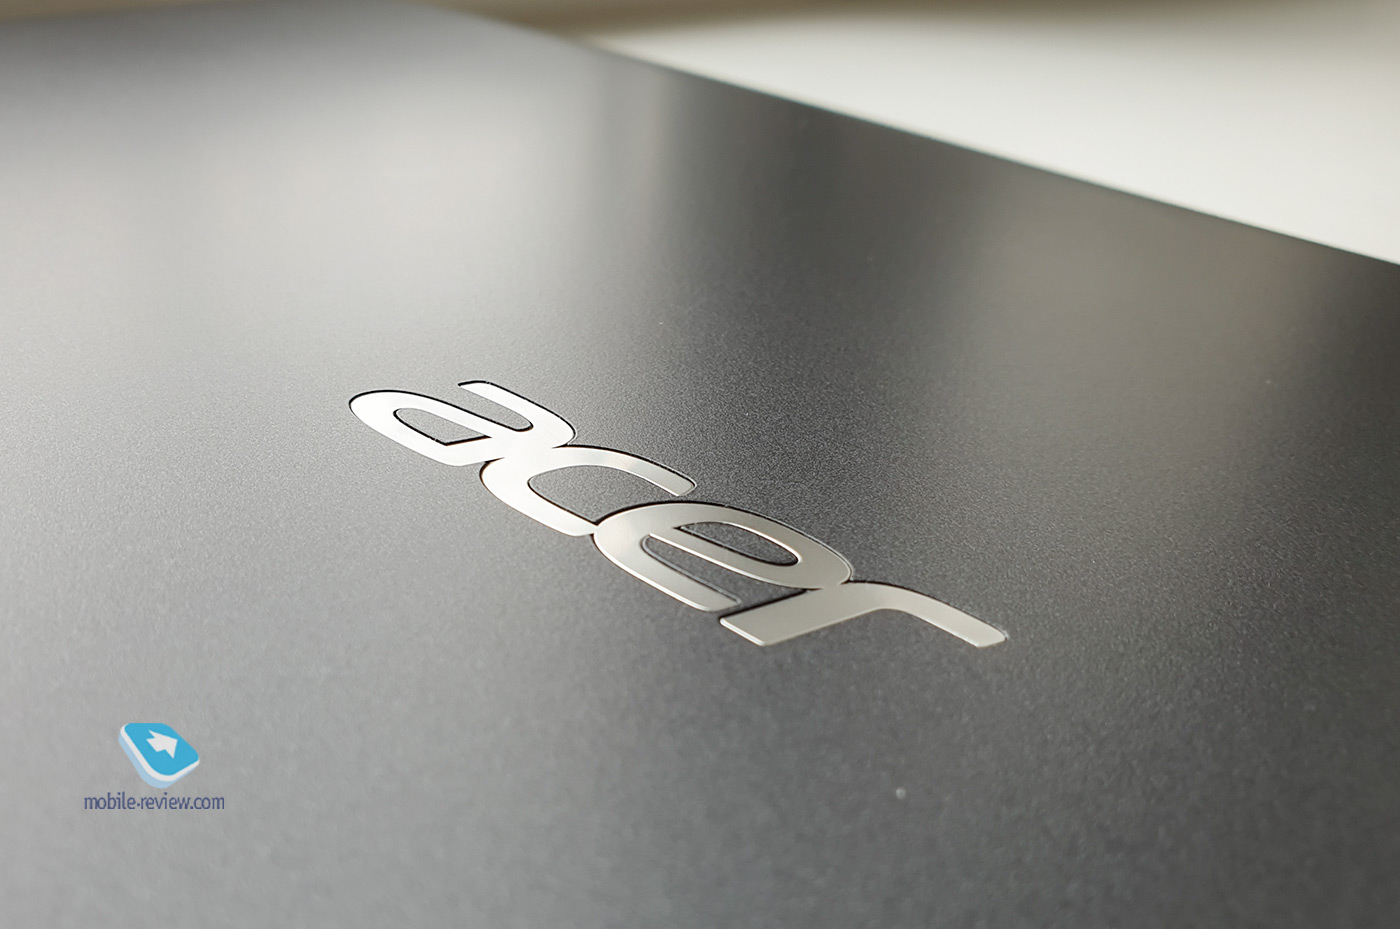 5 характеристик универсального делового ноутбука для офиса (и школы?) на примере Acer Extensa 15